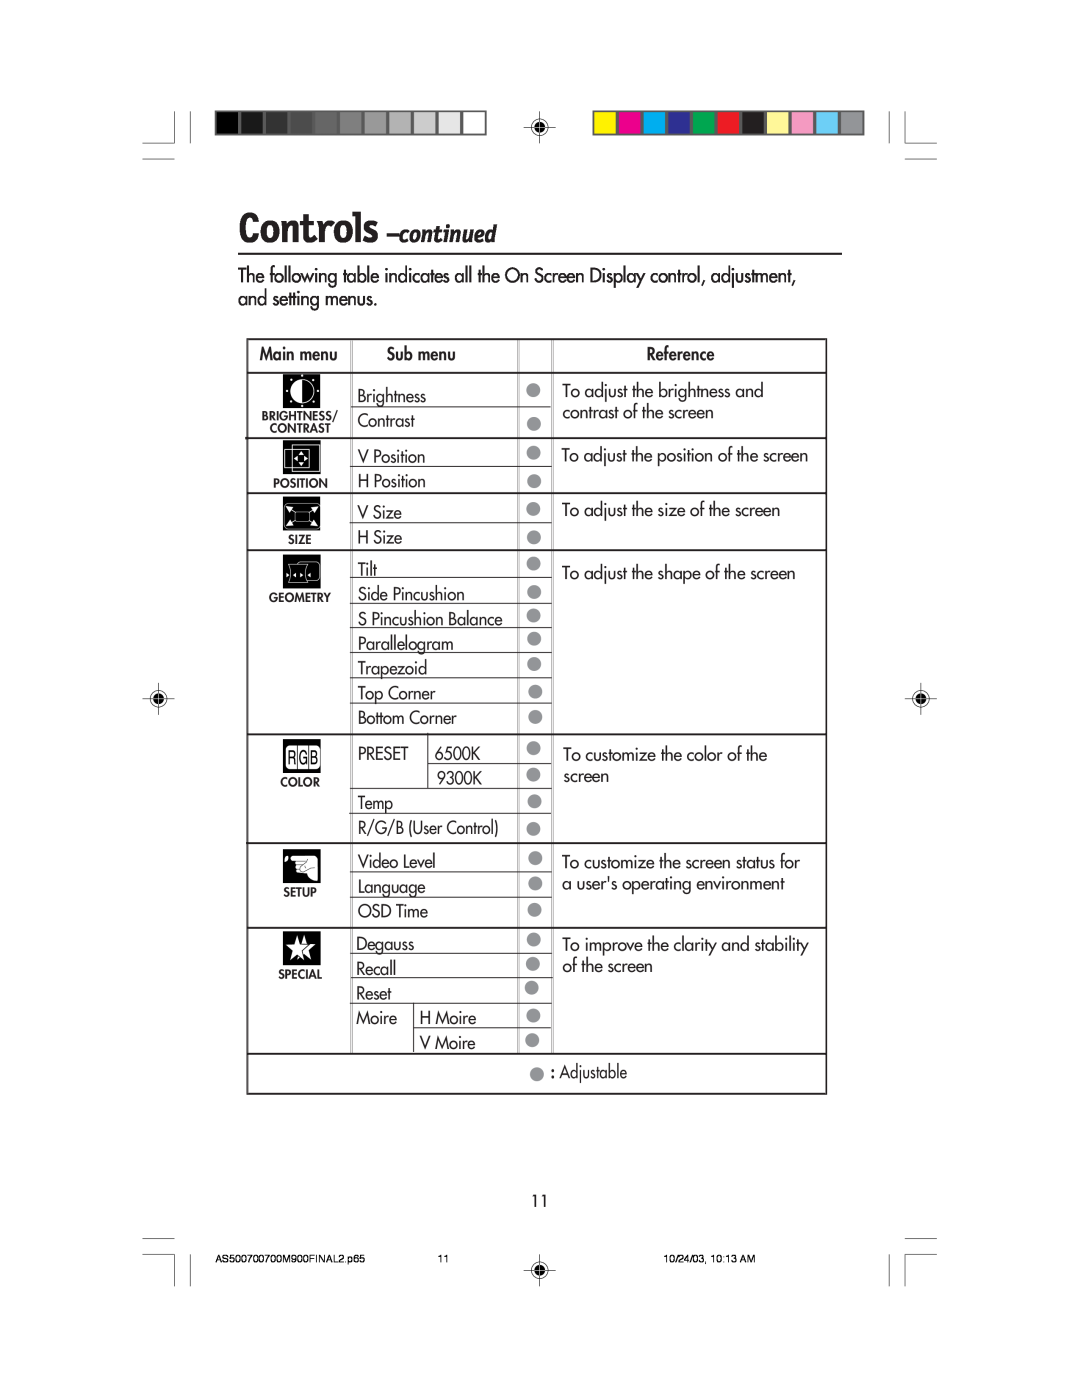 NEC 700, 900, 500 manual Controls -continued, Main menu 